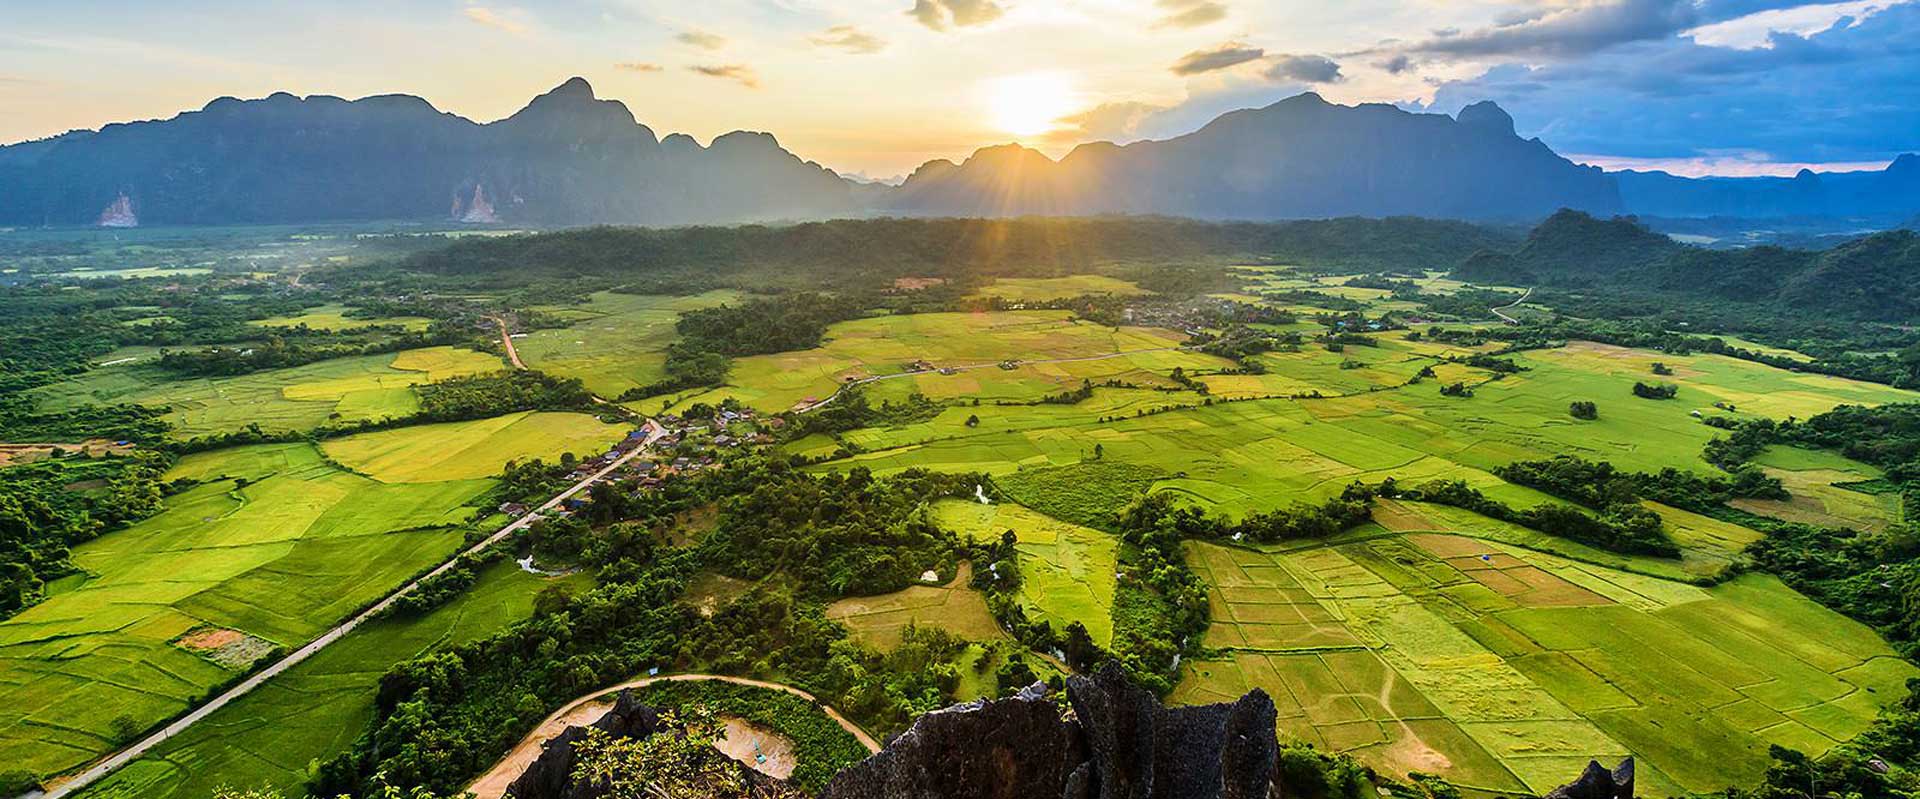 quand partir au laos - Coucher de soleil dans une vallée au Laos